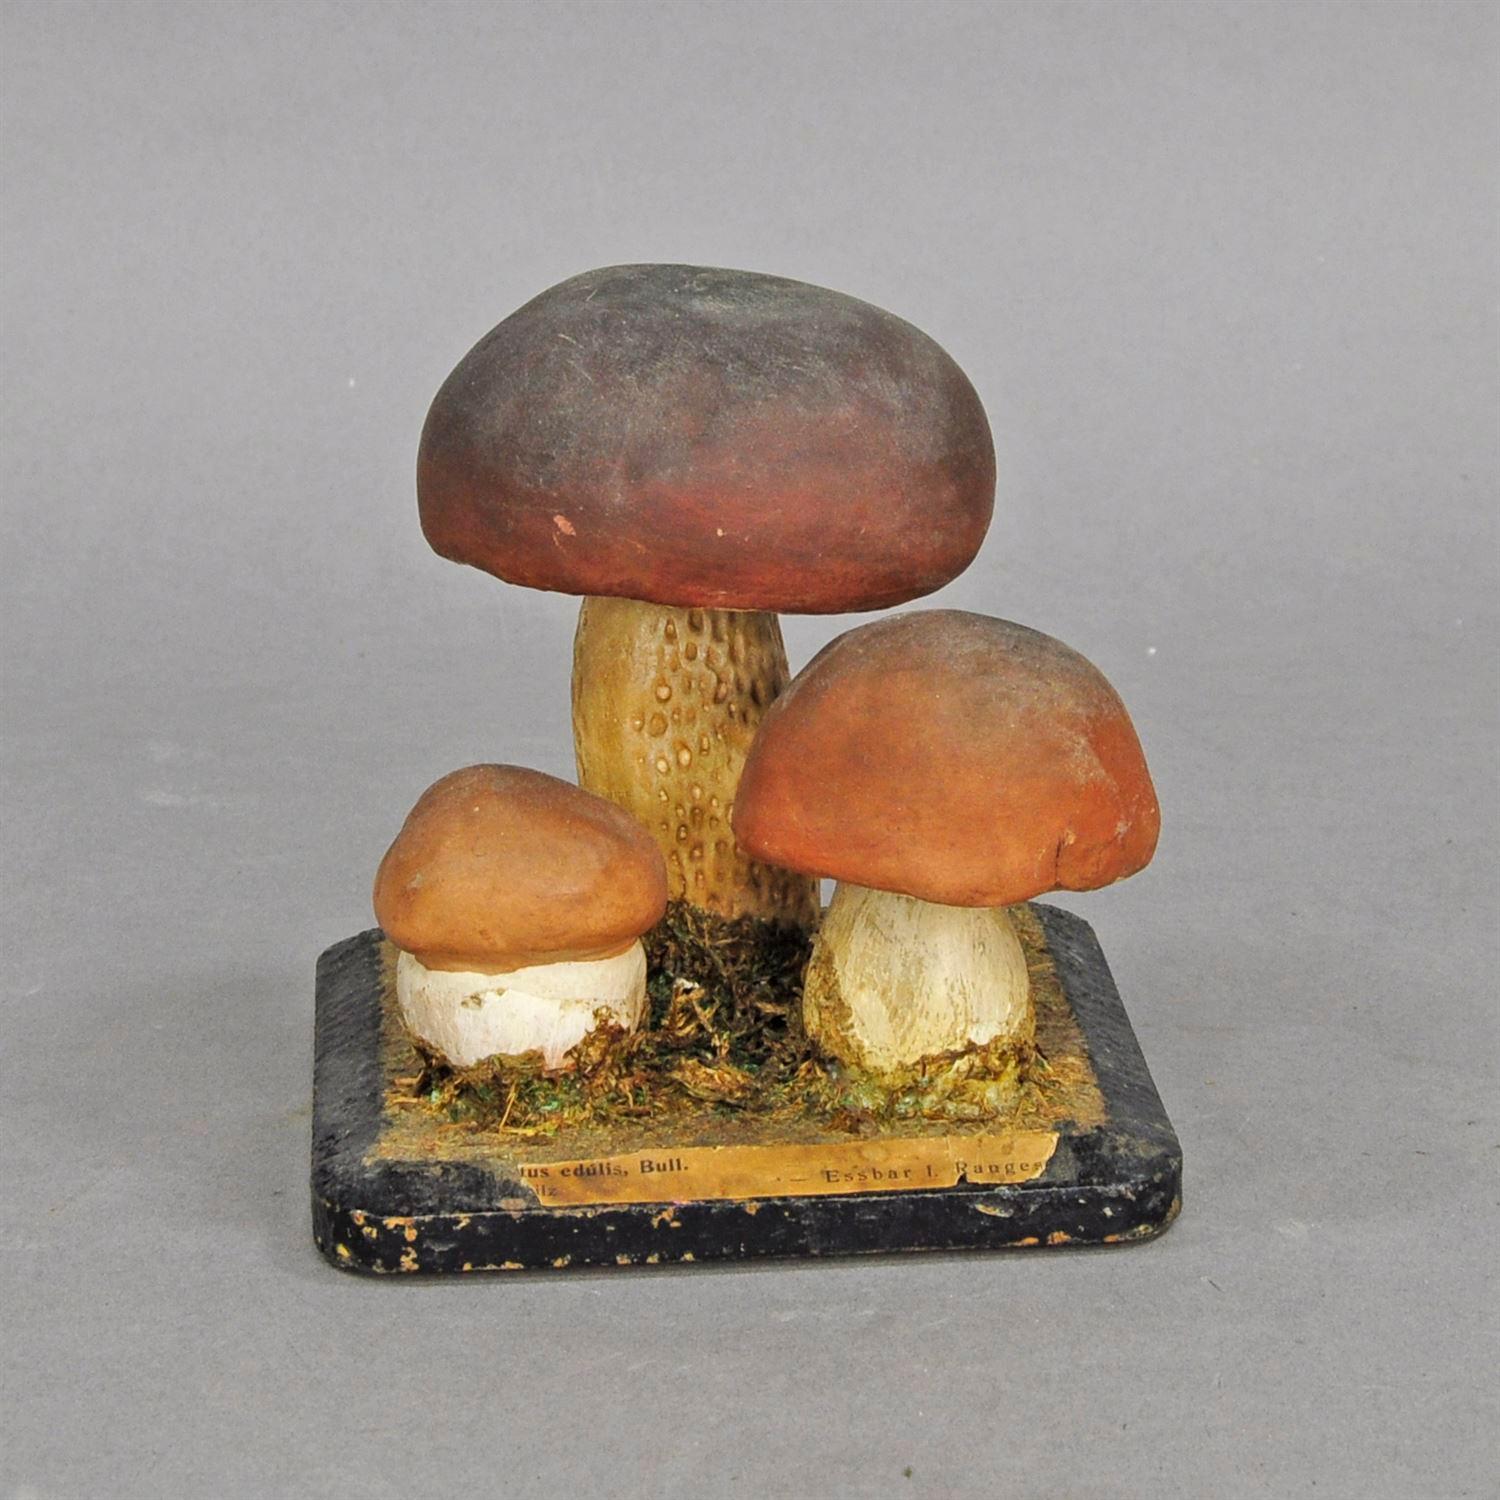 fungi model